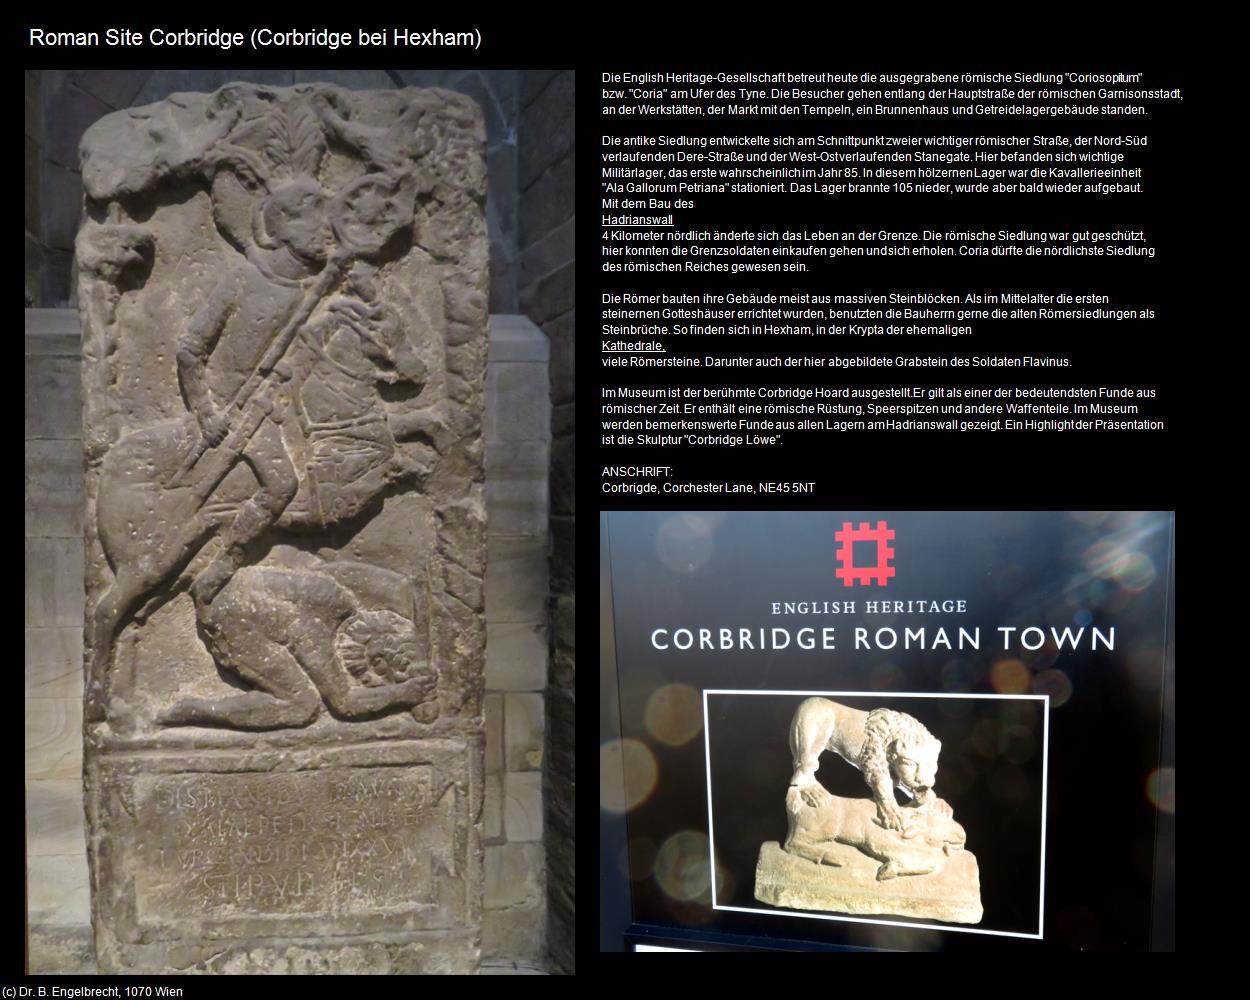 Roman Site Corbridge (Corbridge bei Hexham, England) in Kulturatlas-ENGLAND und WALES(c)B.Engelbrecht